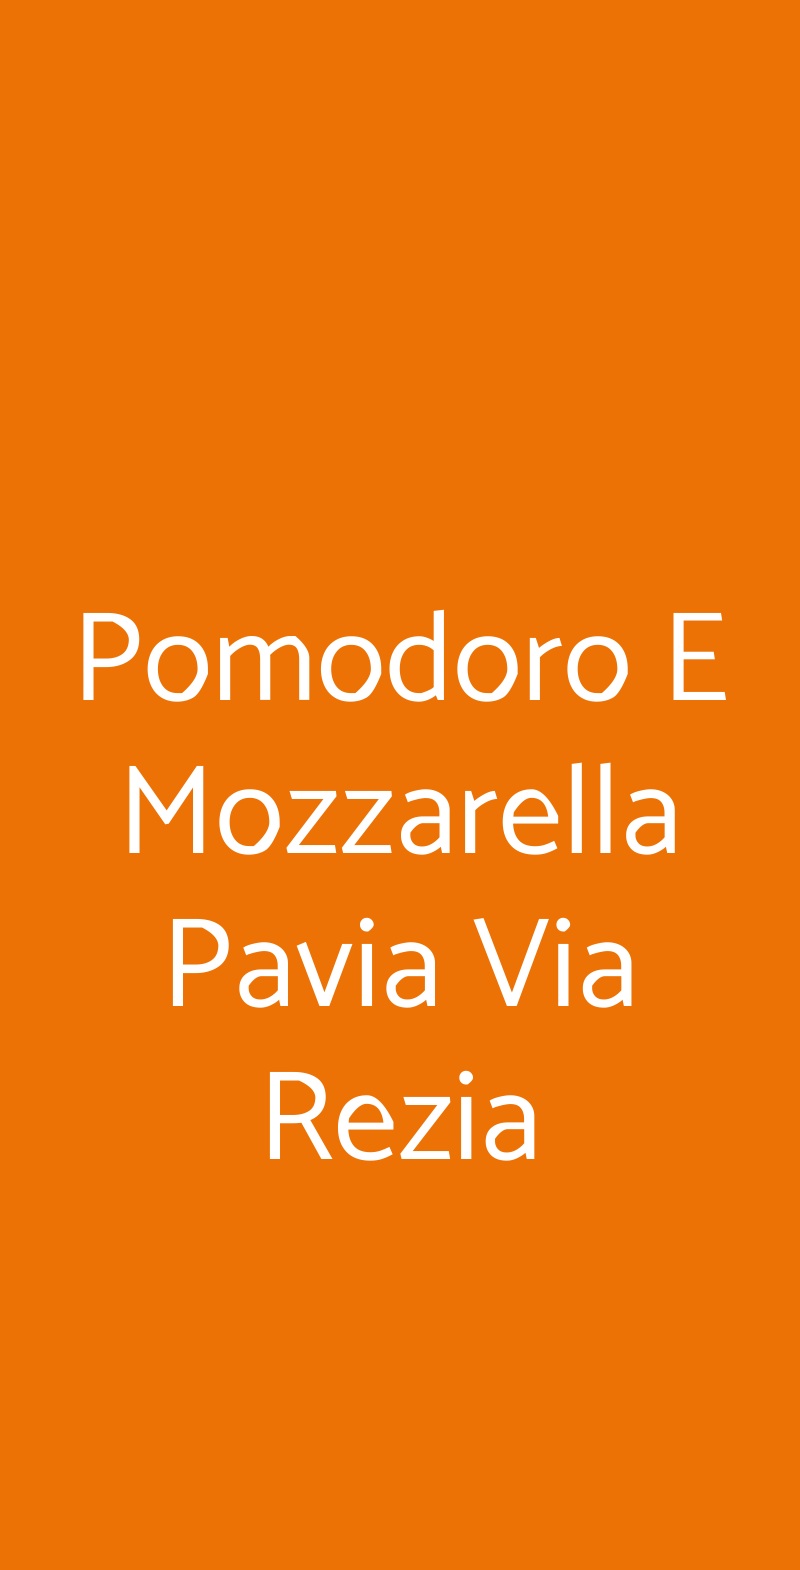 Pomodoro E Mozzarella Pavia Via Rezia Pavia menù 1 pagina